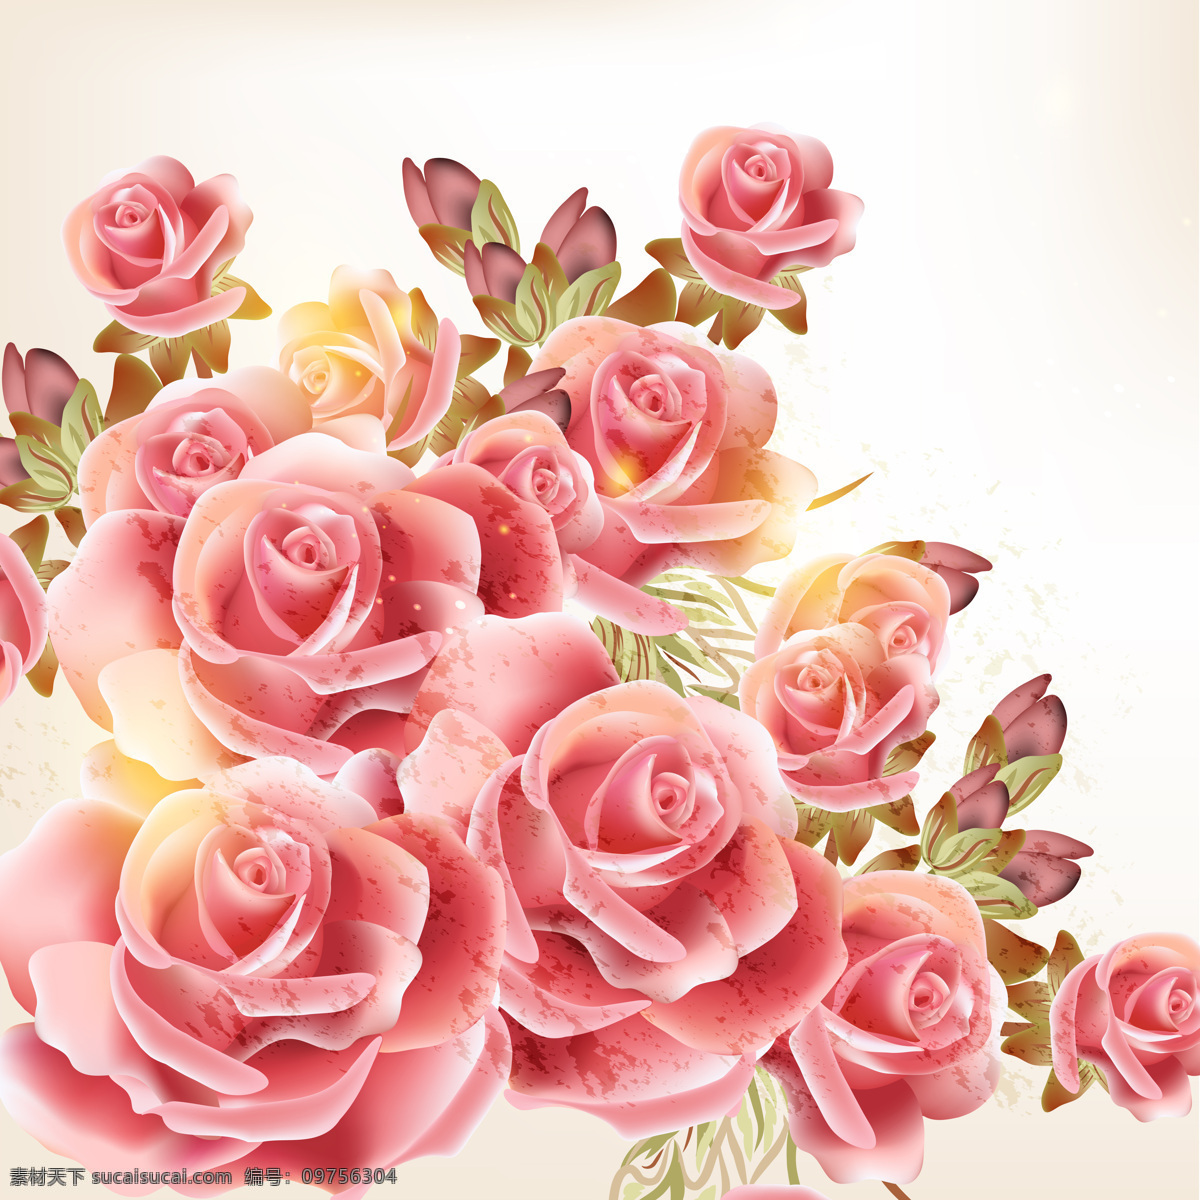 浪漫 玫瑰 矢量 花卉 背景 anmin 白色